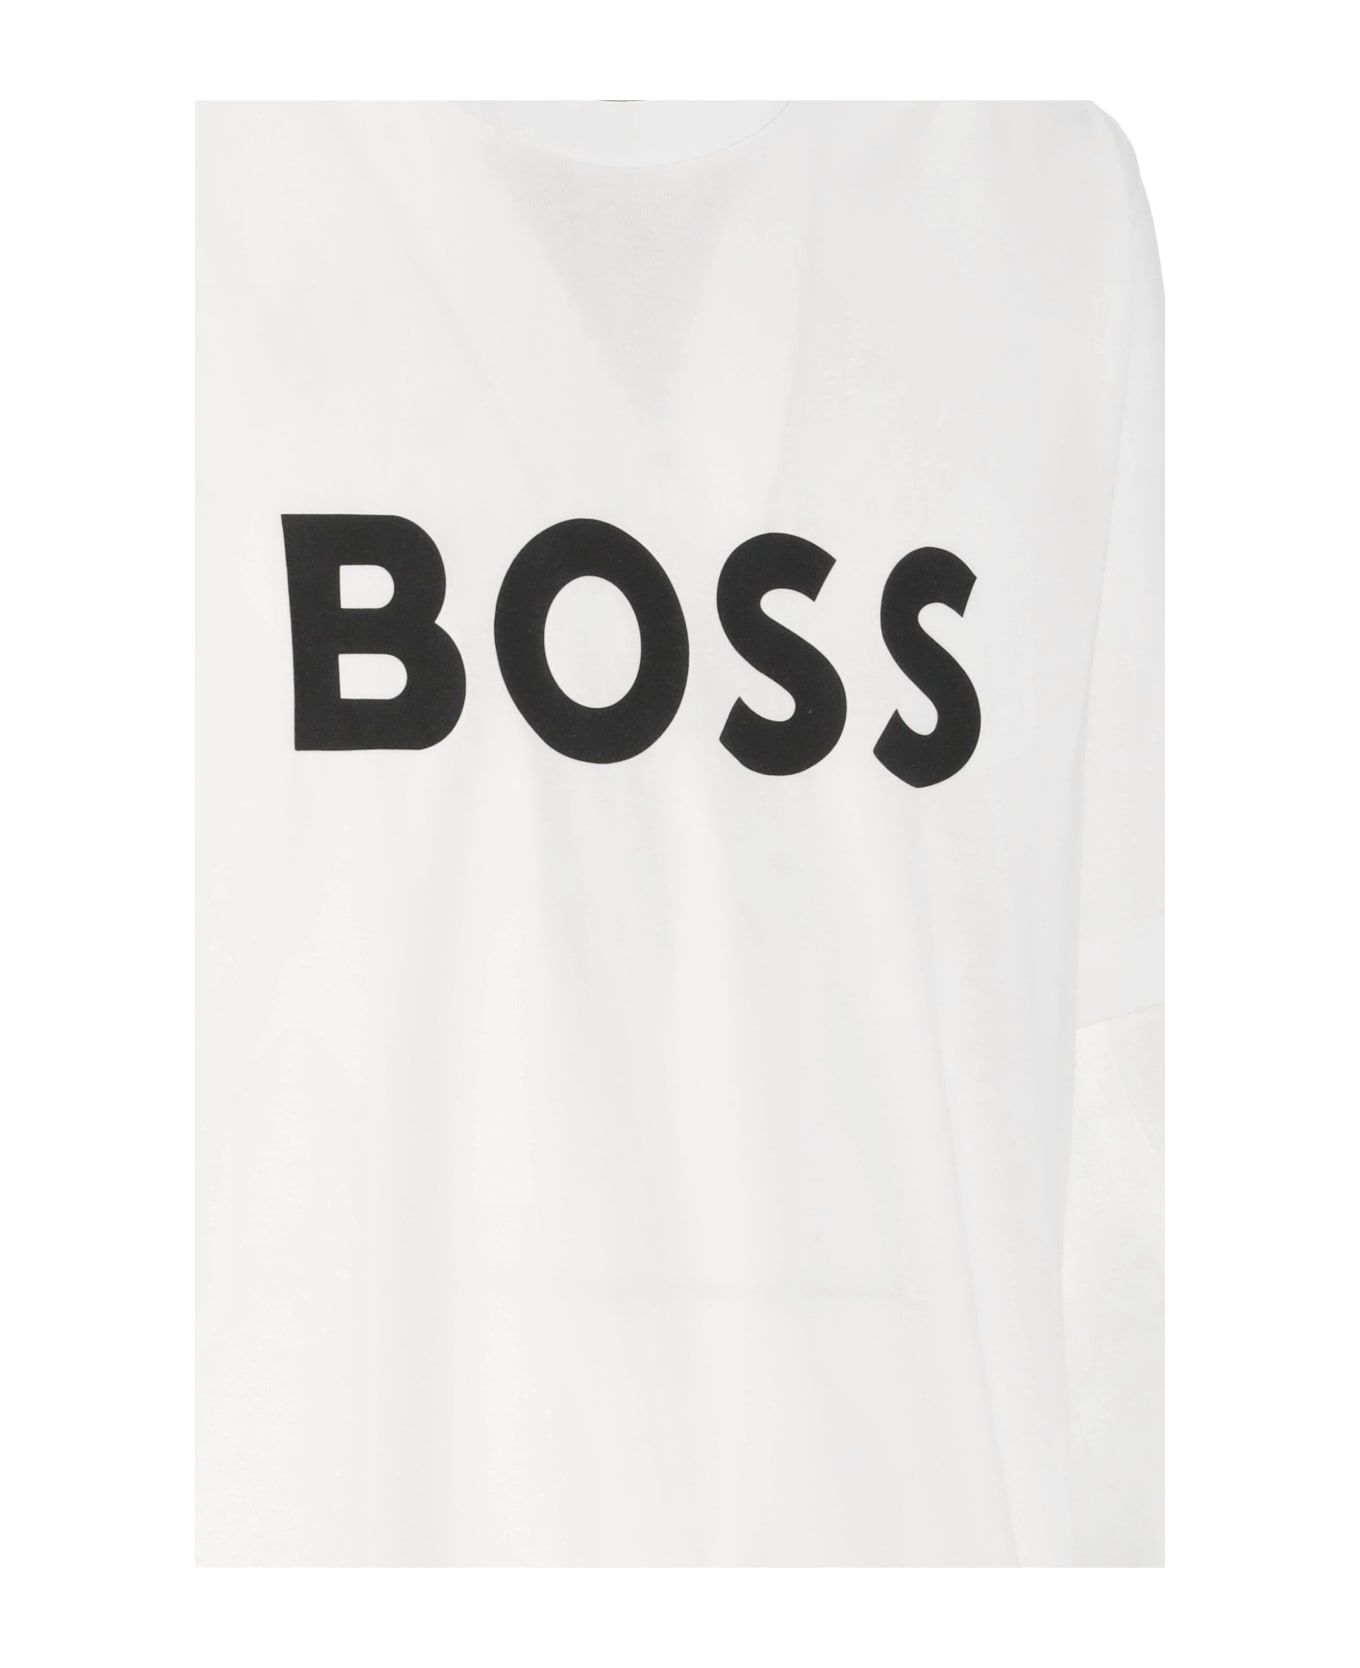 Hugo Boss Tiburt 354 T-shirt - White